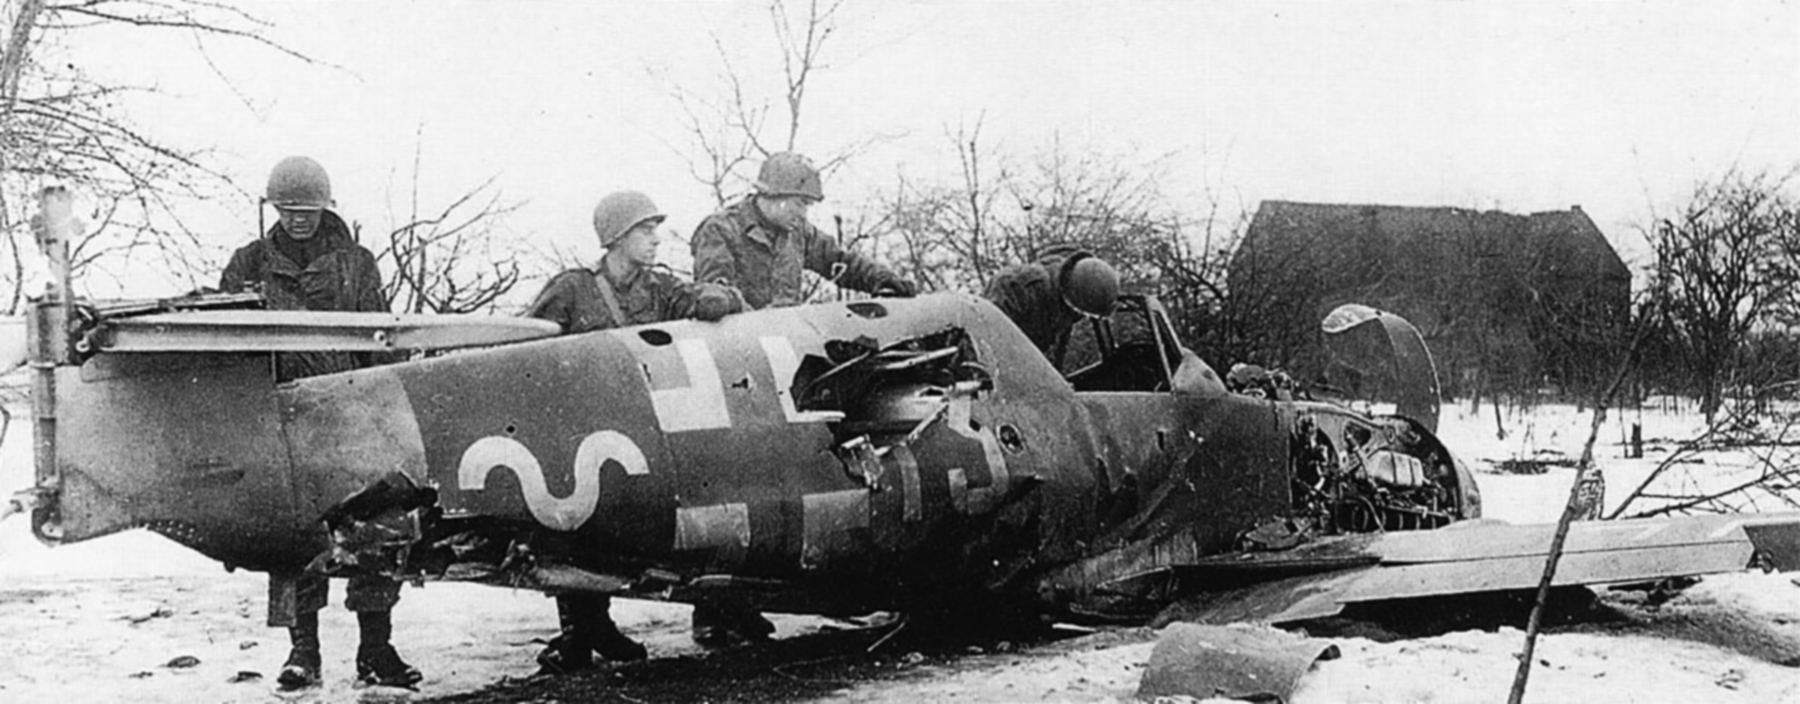 Messerschmitt Bf 109G14AS Erla 13.JG53 White 13 Herbert Maxis WNr 784993 sd op Bodenplatte 1st Jan 1945 08